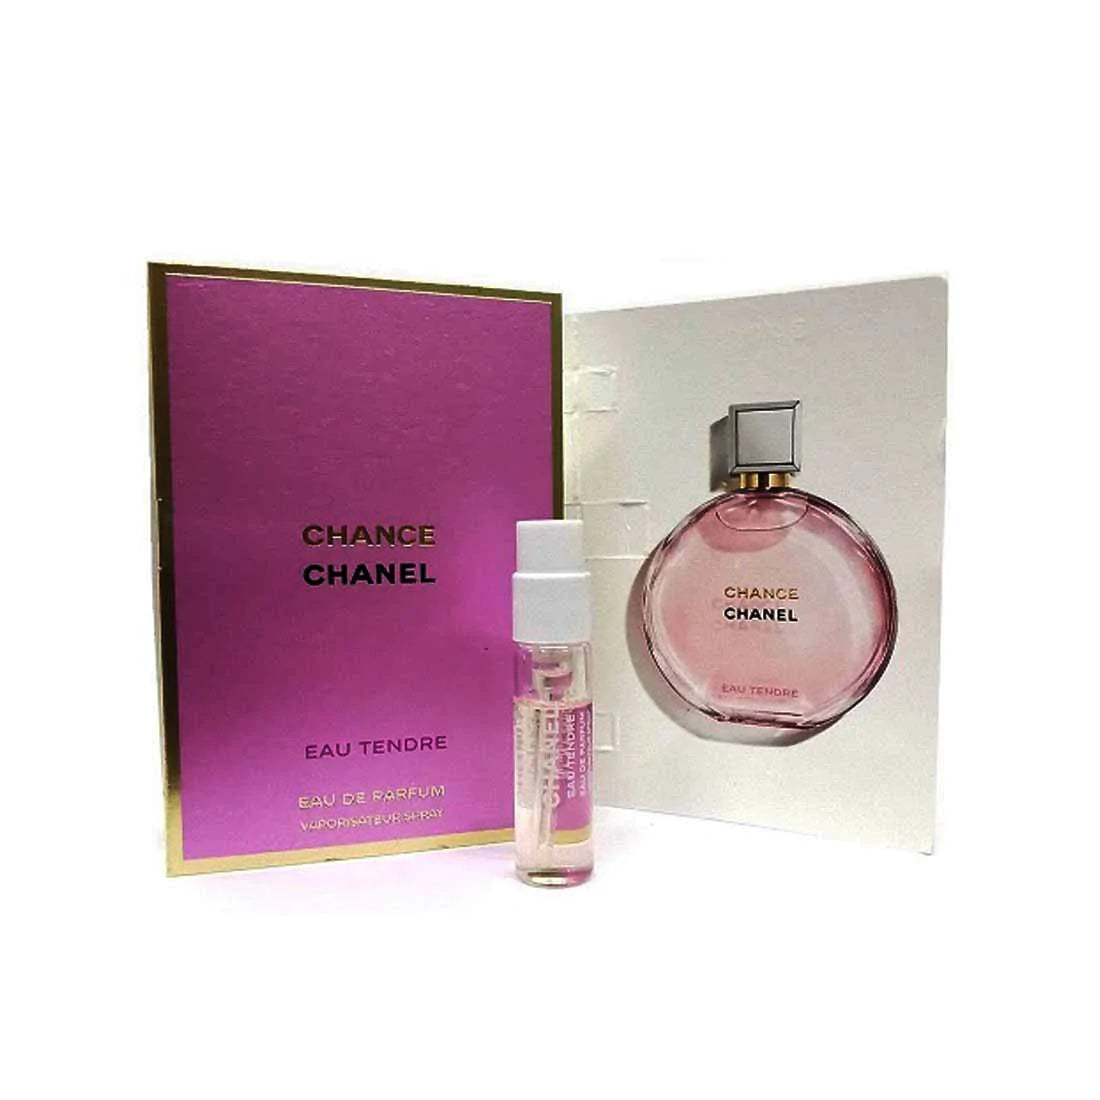 CHANEL CHANCE Eau Tendre Eau de Parfum 5oz – always special perfumes & gifts